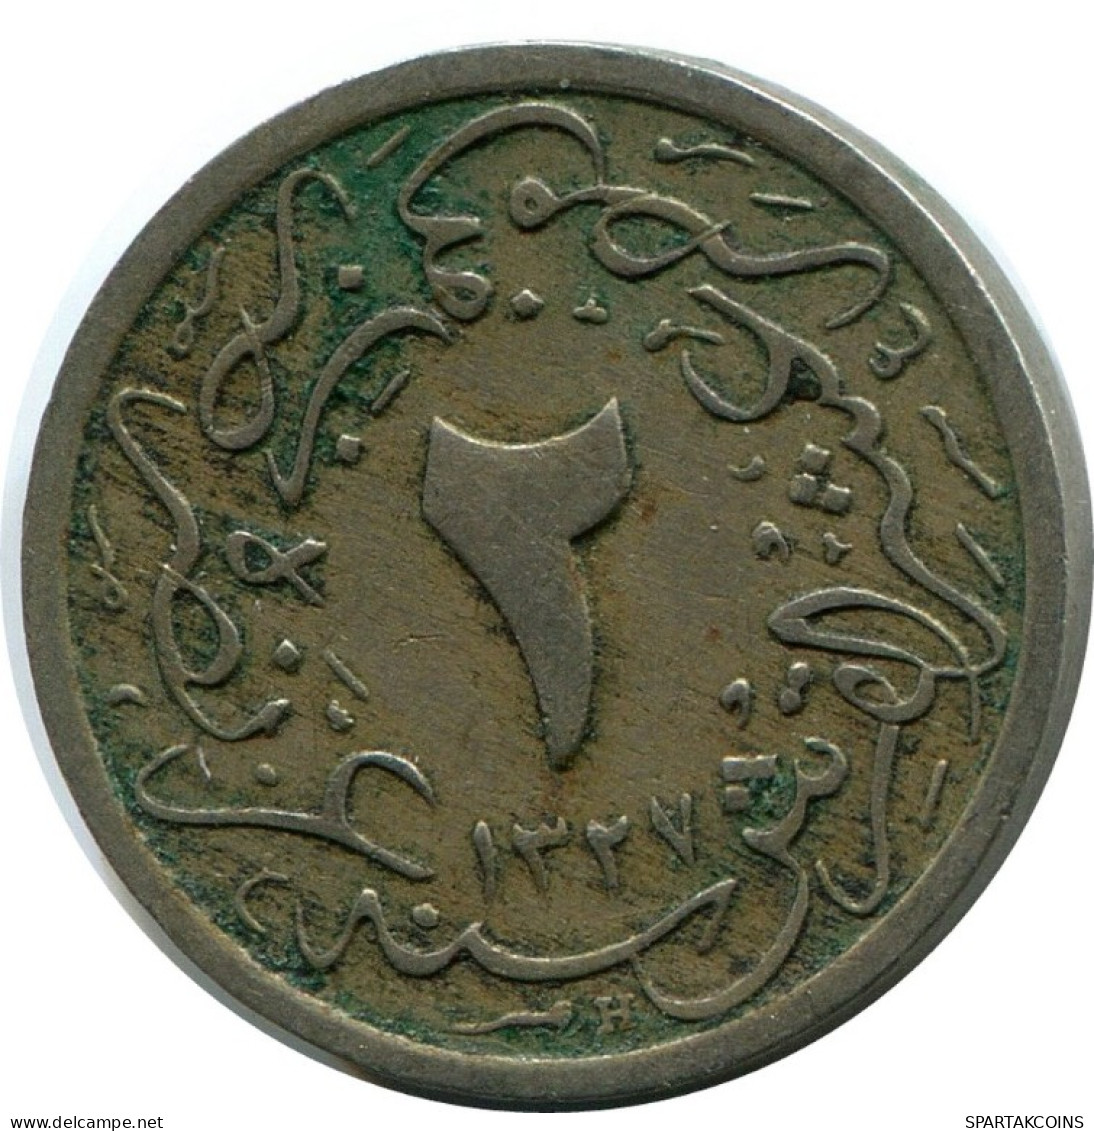 1/20 QIRSH 1910 EGYPT Islamic Coin #AK314.U.A - Egypt